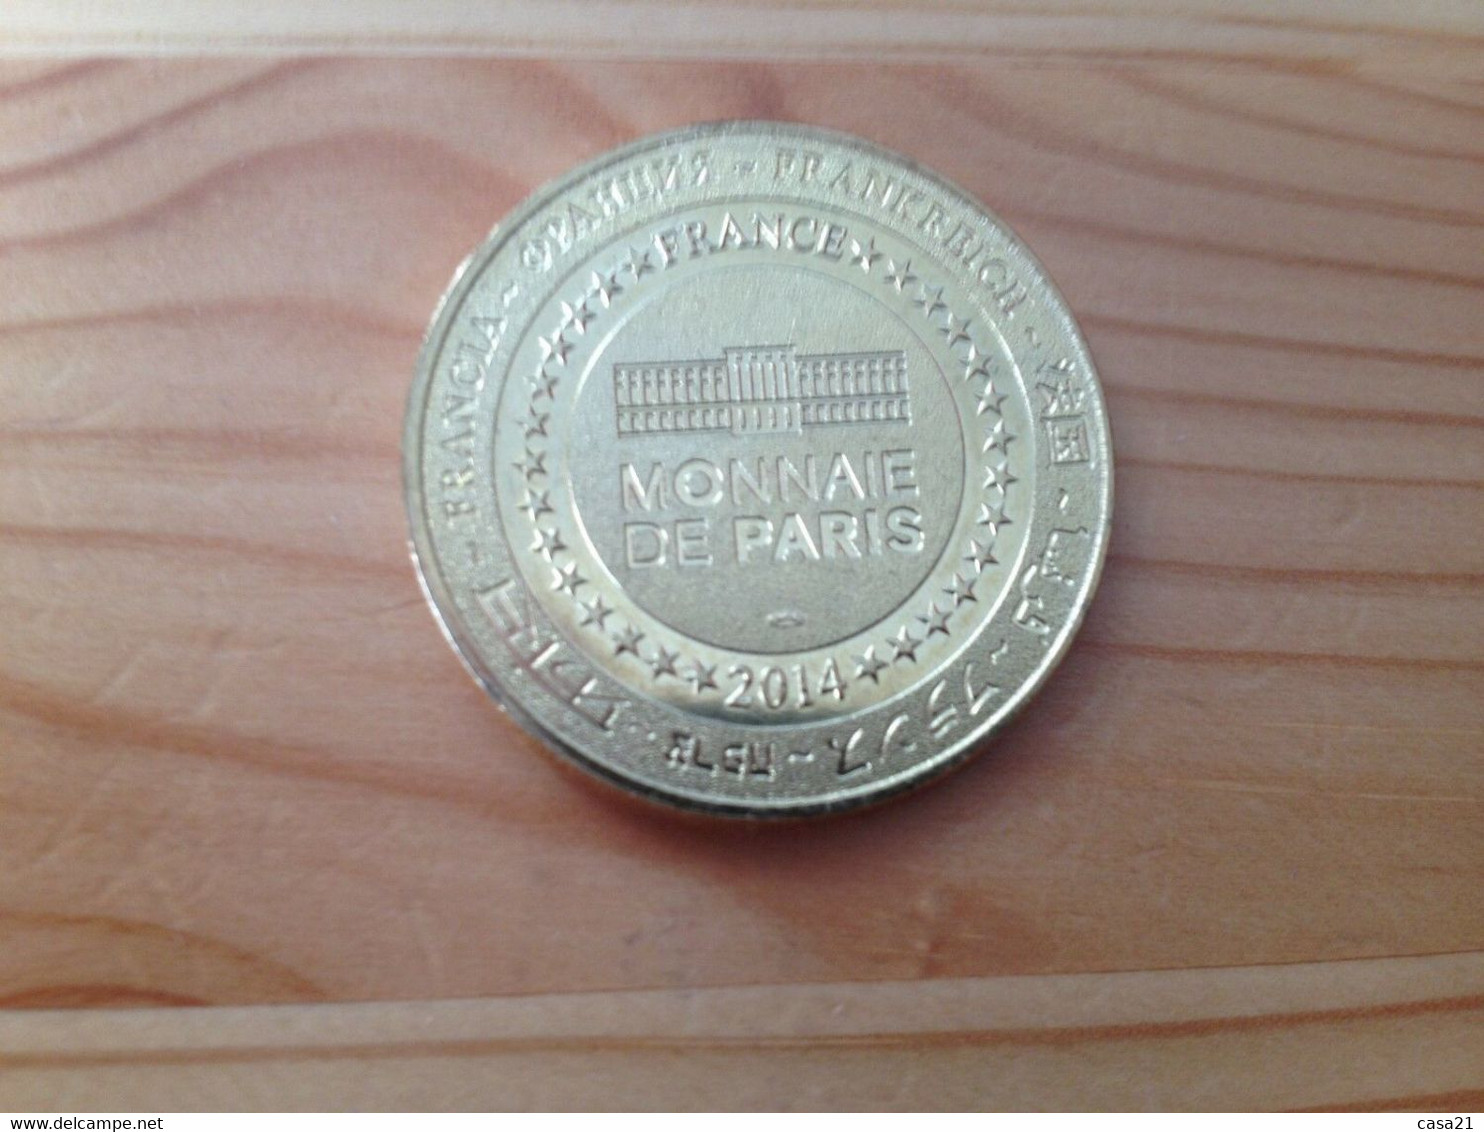 Monnaie De Paris - Basilique Saint Andoche - 2014